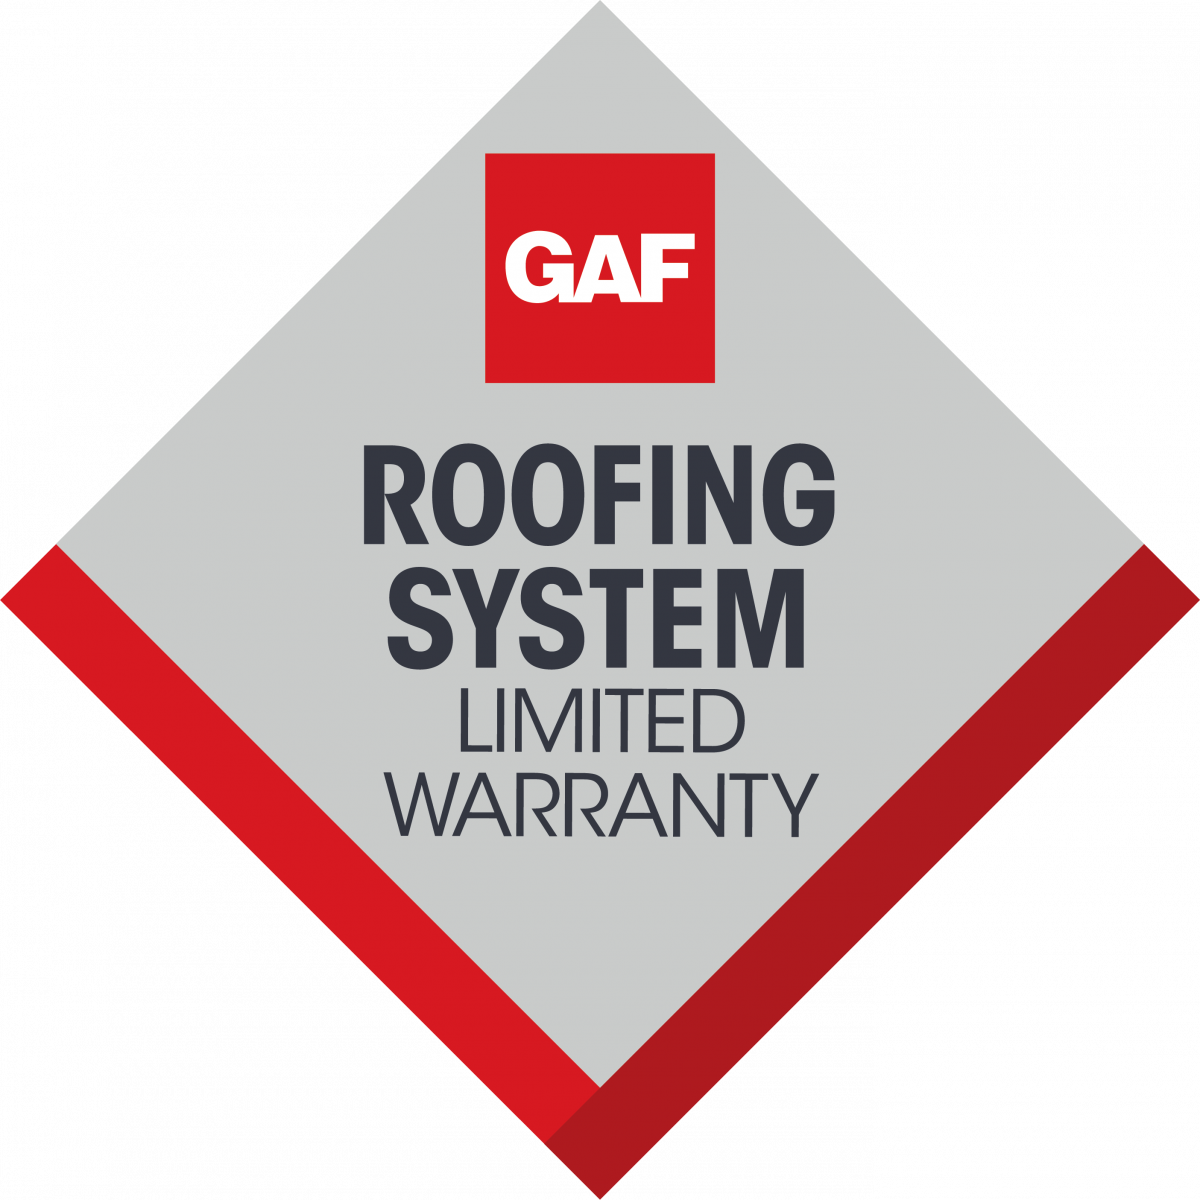 GAF Roofing System Limited Warranty